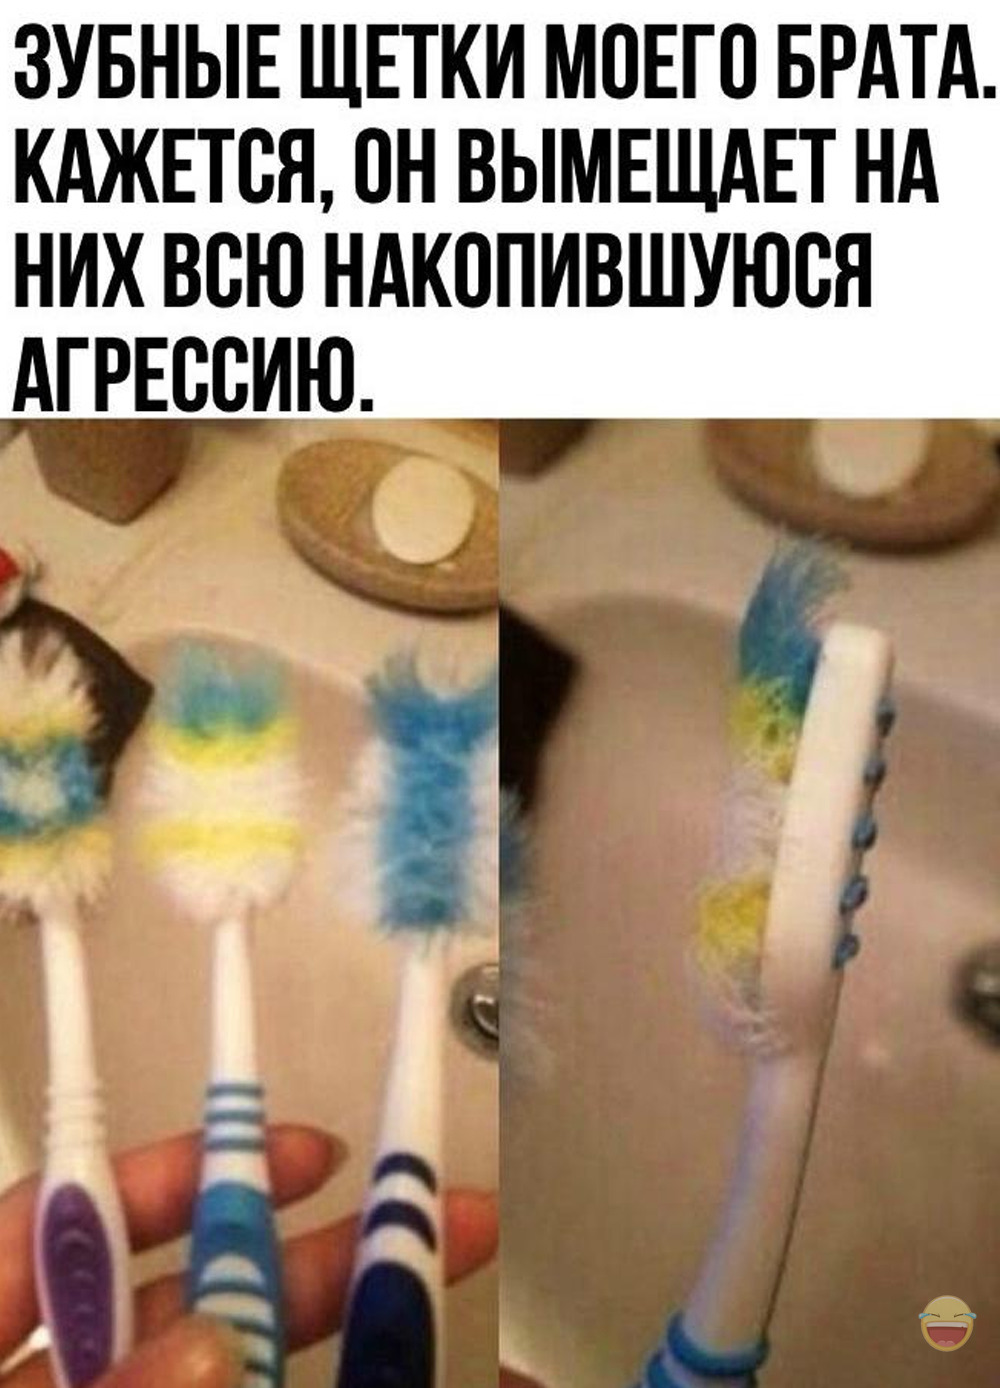 Секс с зубной щетки электрическая зубная щетка oral b купить москва